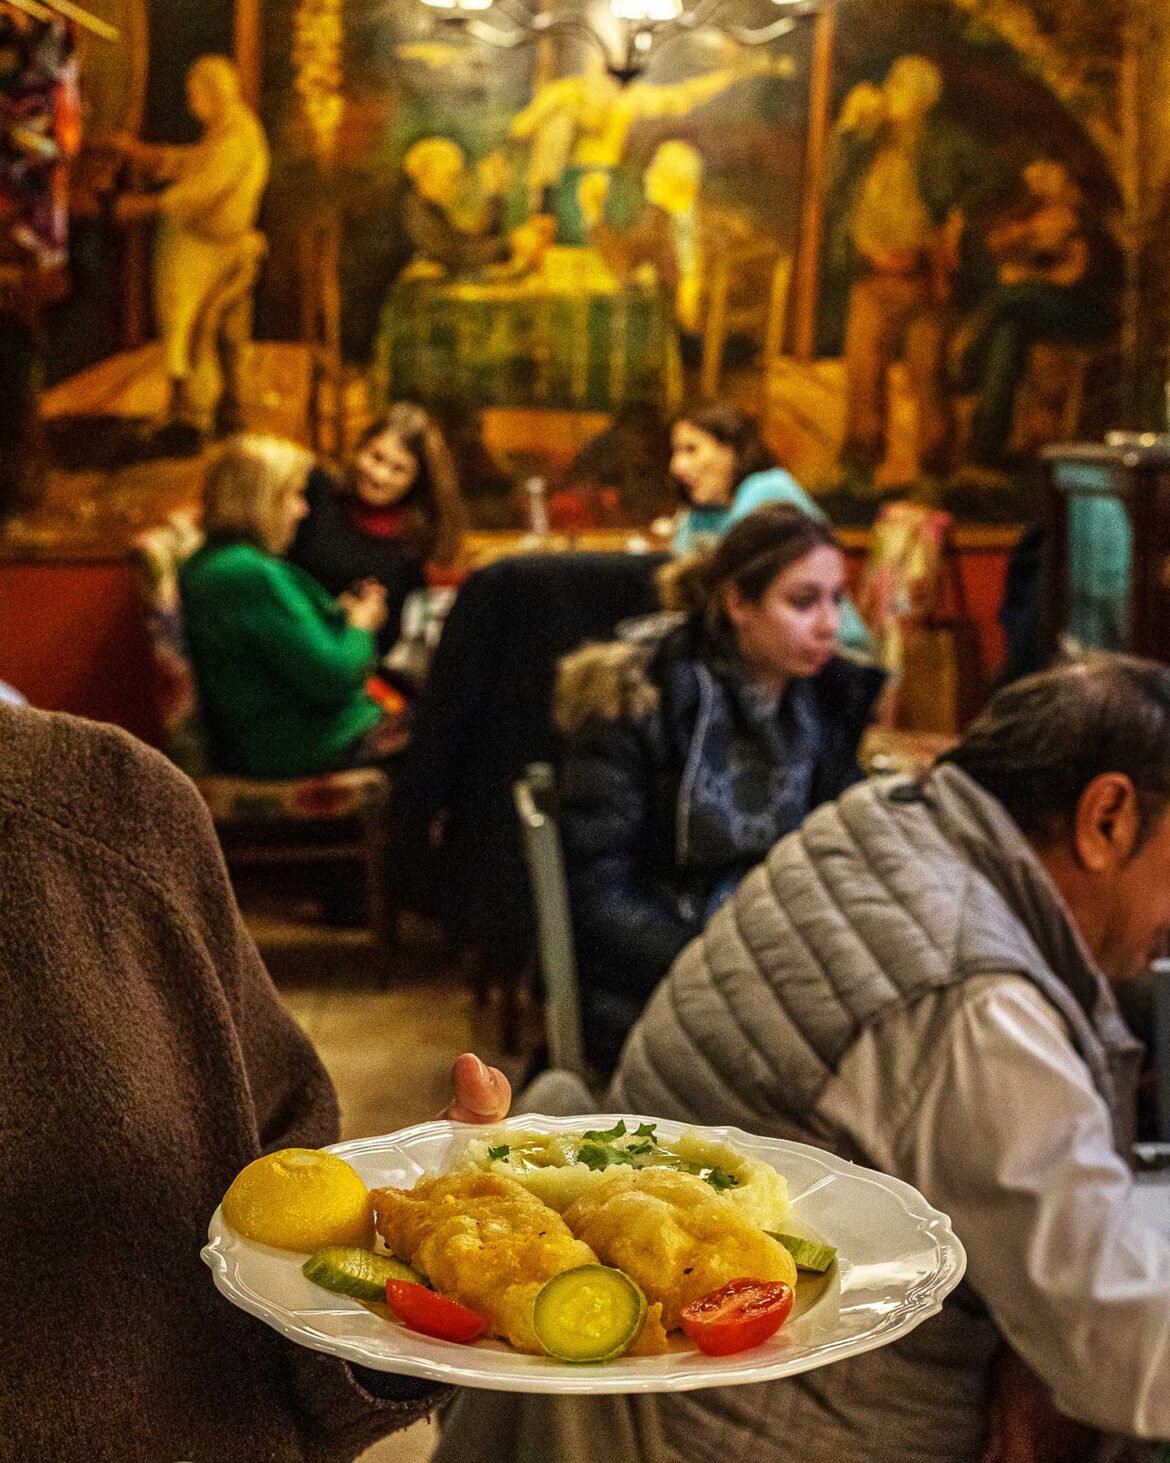 25η Μαρτίου: Πού τρώμε τον καλύτερο τηγανητό μπακαλιάρο στην Αθήνα;